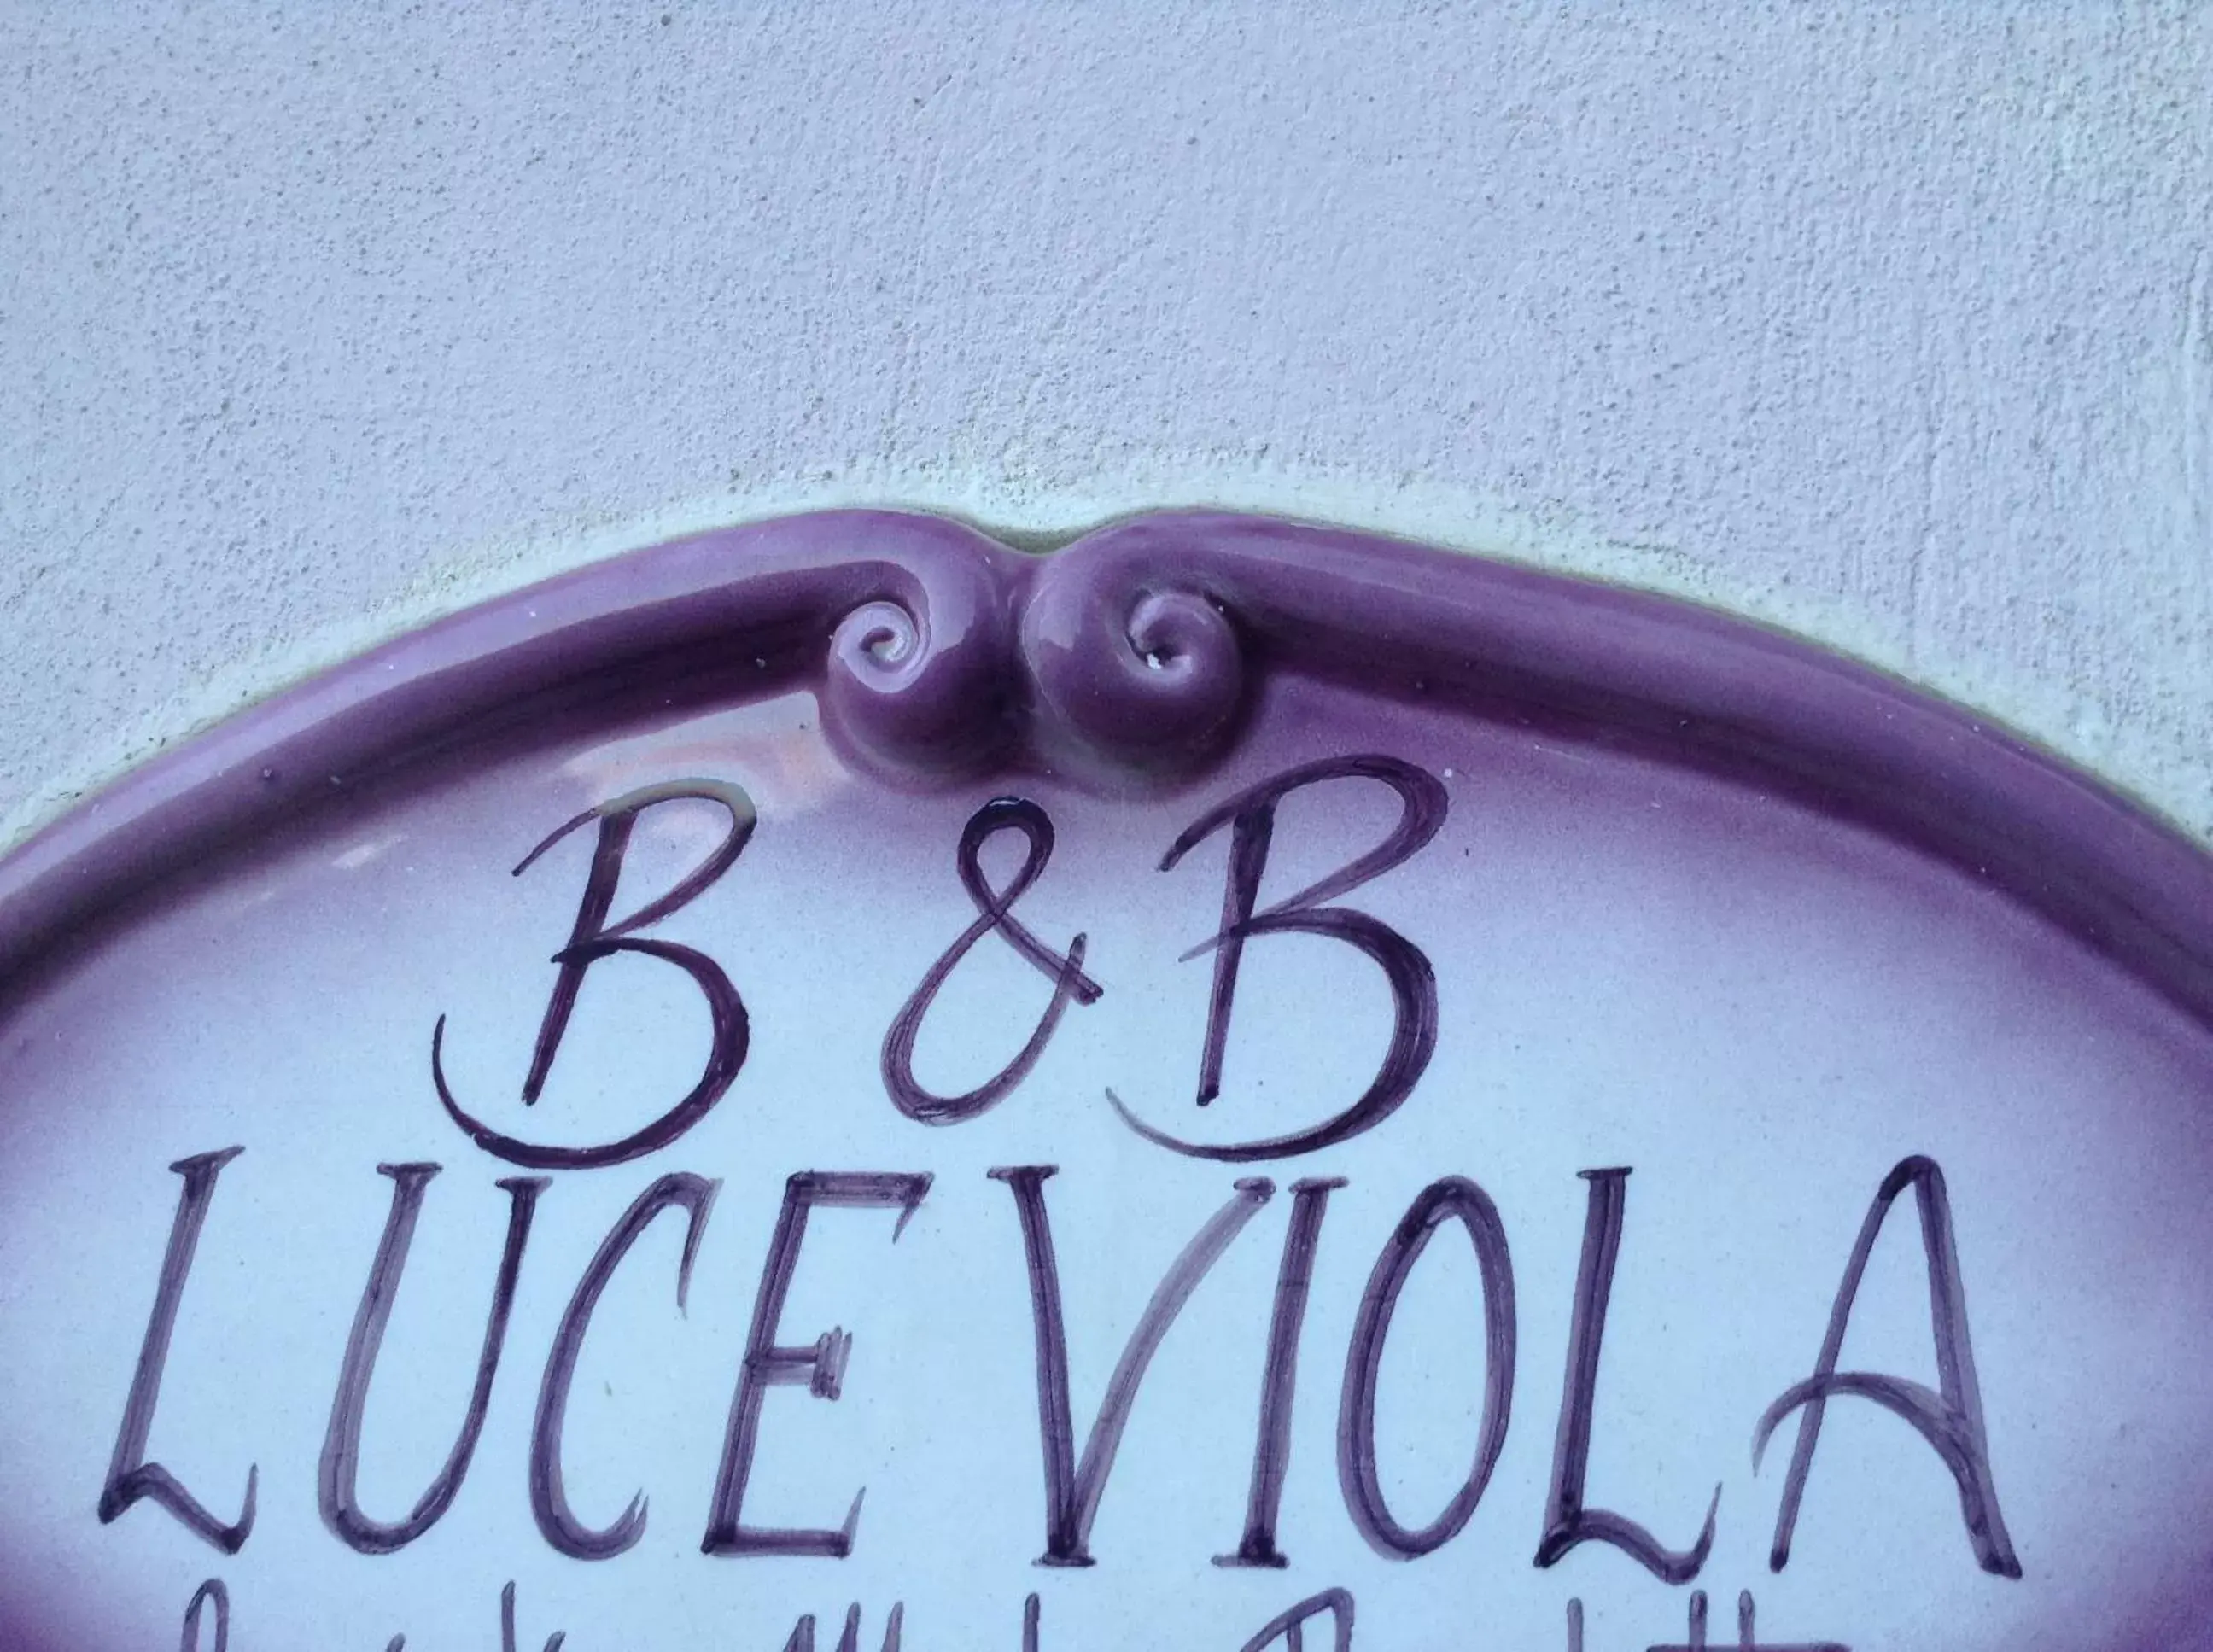 Facade/entrance in B&B Luce Viola